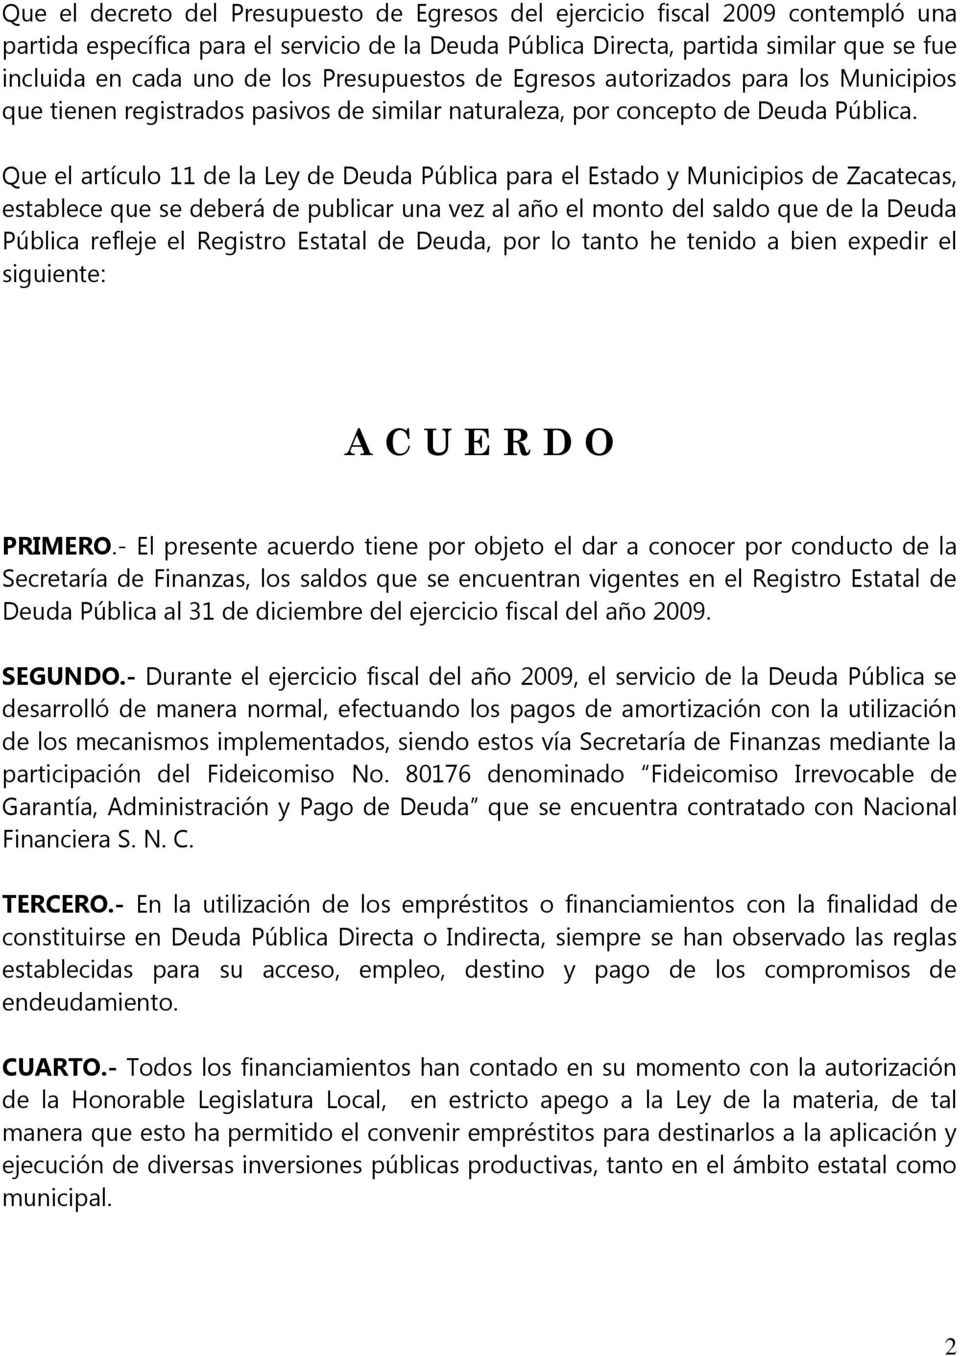 Que el artículo 11 de la Ley de Deuda Pública para el Estado y Municipios de Zacatecas, establece que se deberá de publicar una vez al año el monto del saldo que de la Deuda Pública refleje el